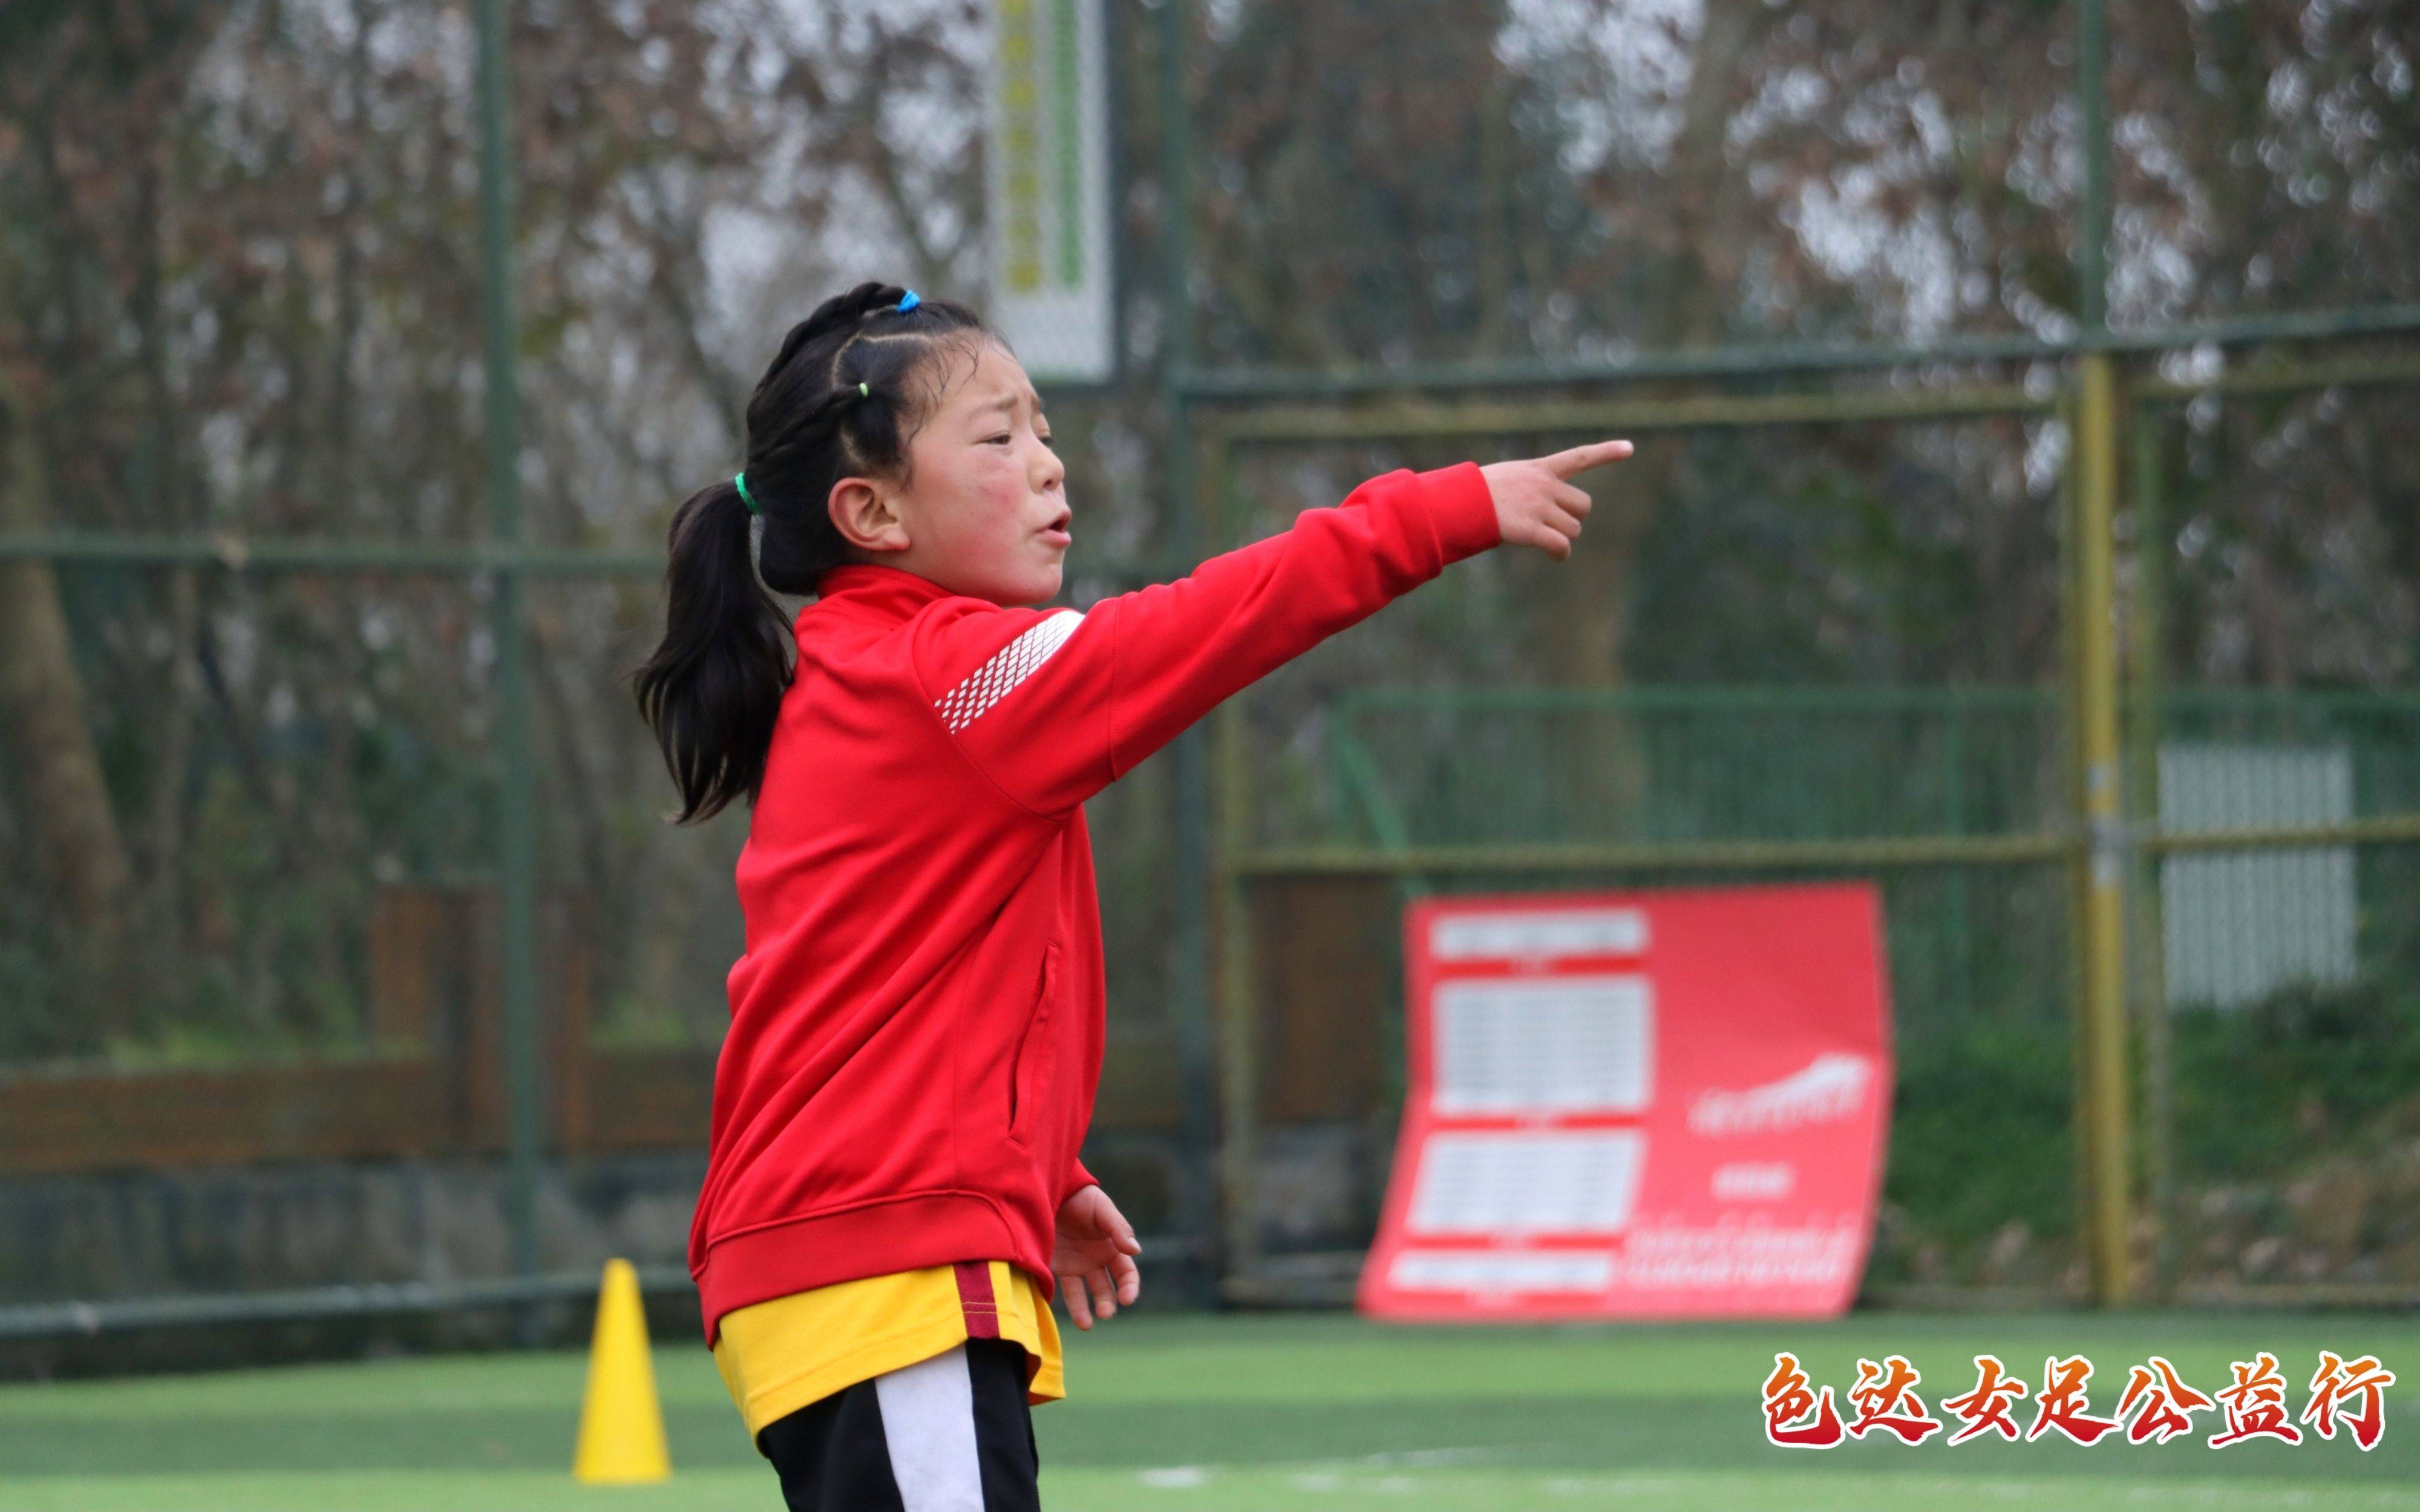 桑成|高原上的女子足球队 平均年龄只有9岁